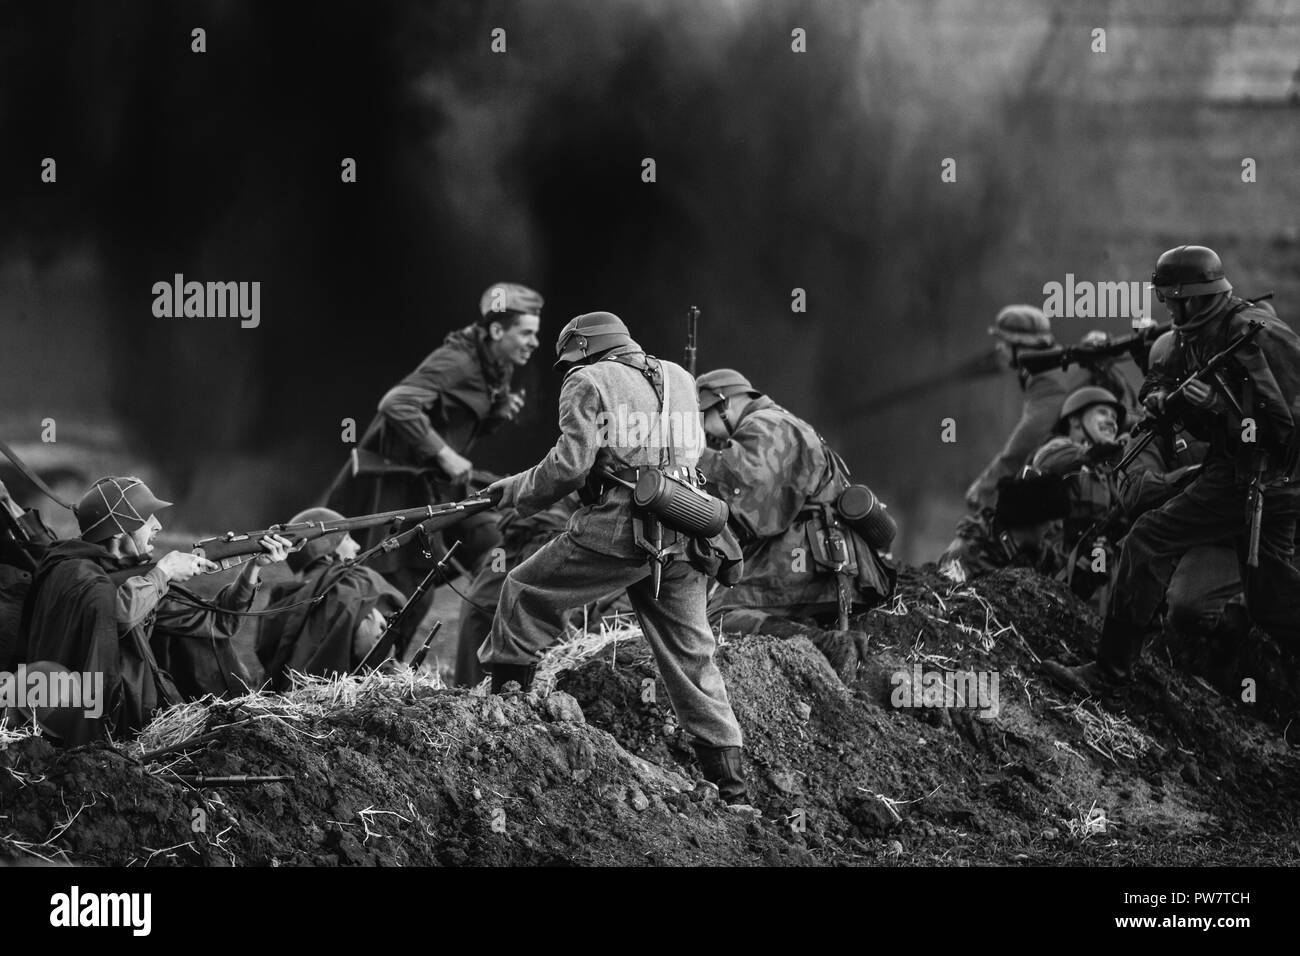 Minsk, Belarus - Mai 08, 2015 : de reconstitution historique habillés en soldats d'infanterie de la Wehrmacht allemande et russe, les soldats de l'Armée rouge soviétique de la Seconde Guerre mondiale, jouer un moi Banque D'Images